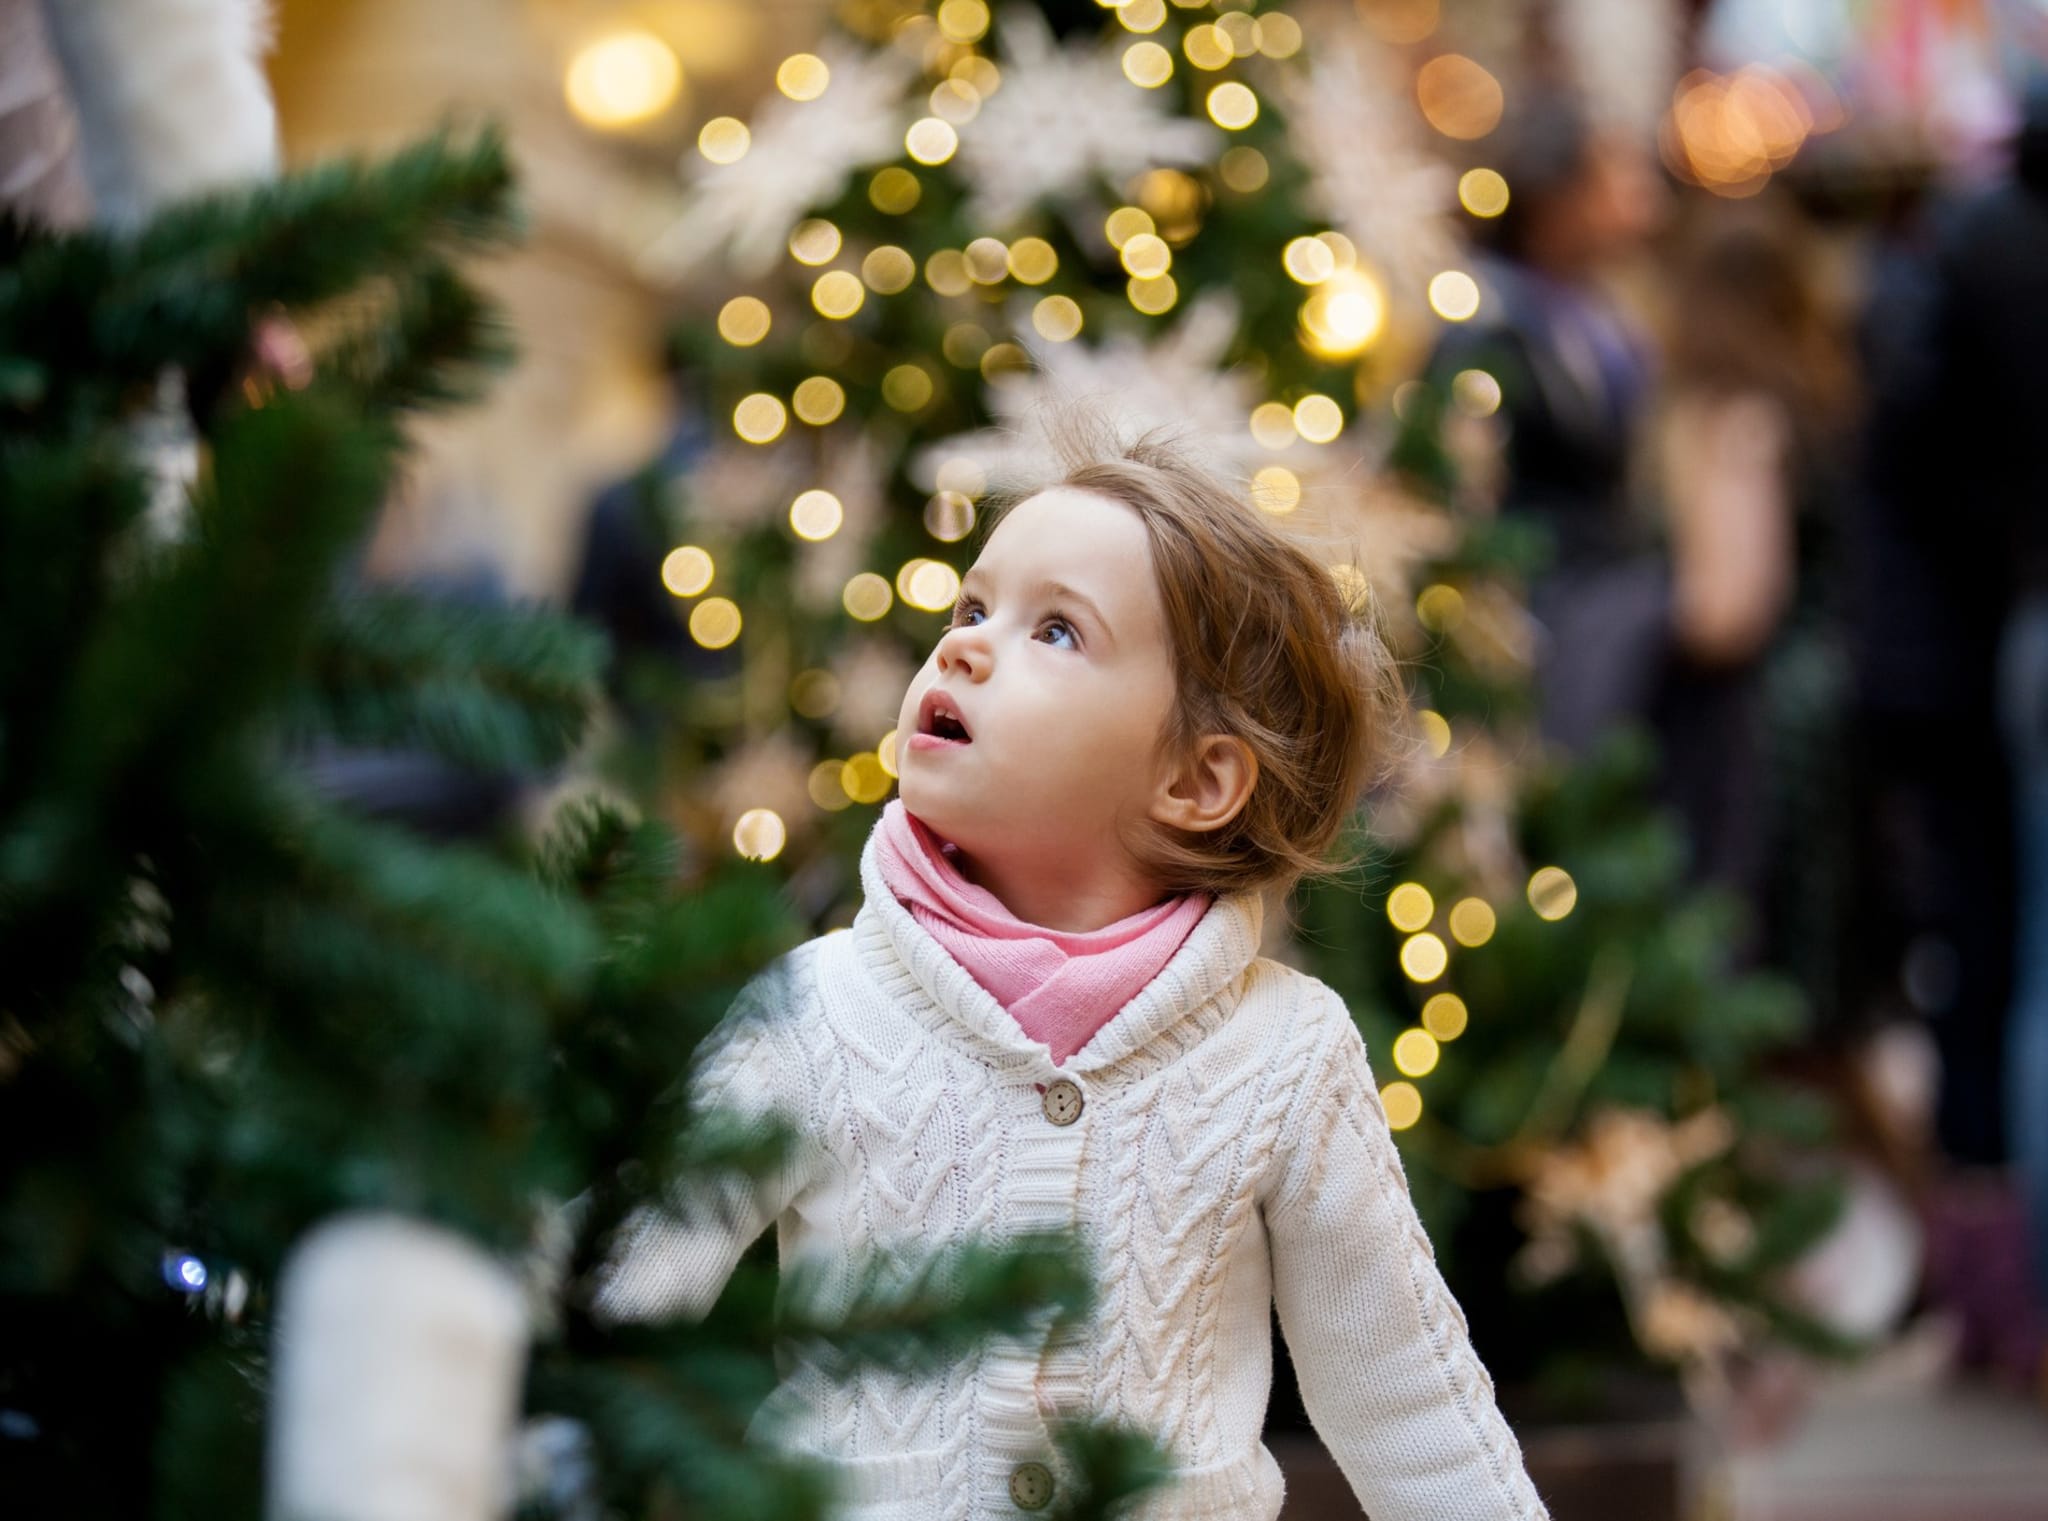 Det er lang tradisjon å tenne julegrana, hvor også lokale kor synger jula inn